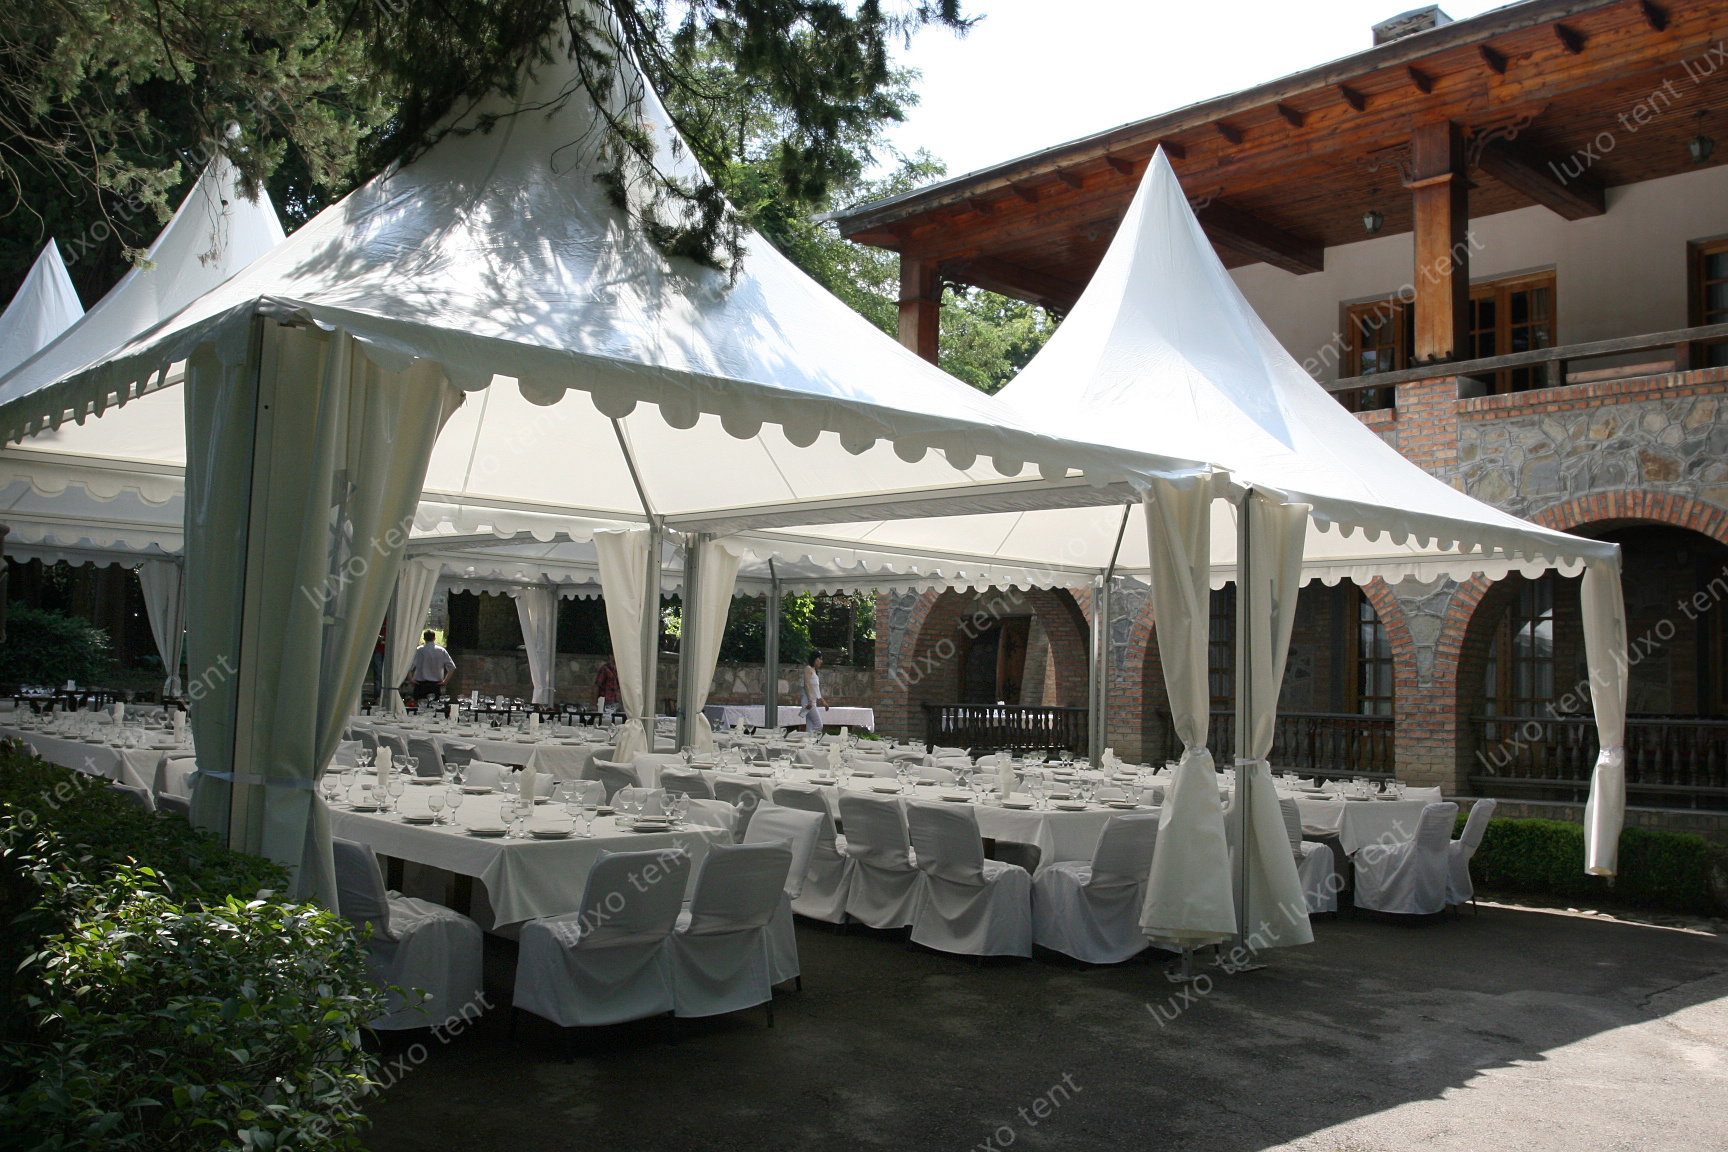 hliníkový rám pvc baldachýn pagoda markíza udalosť párty svadobný stan